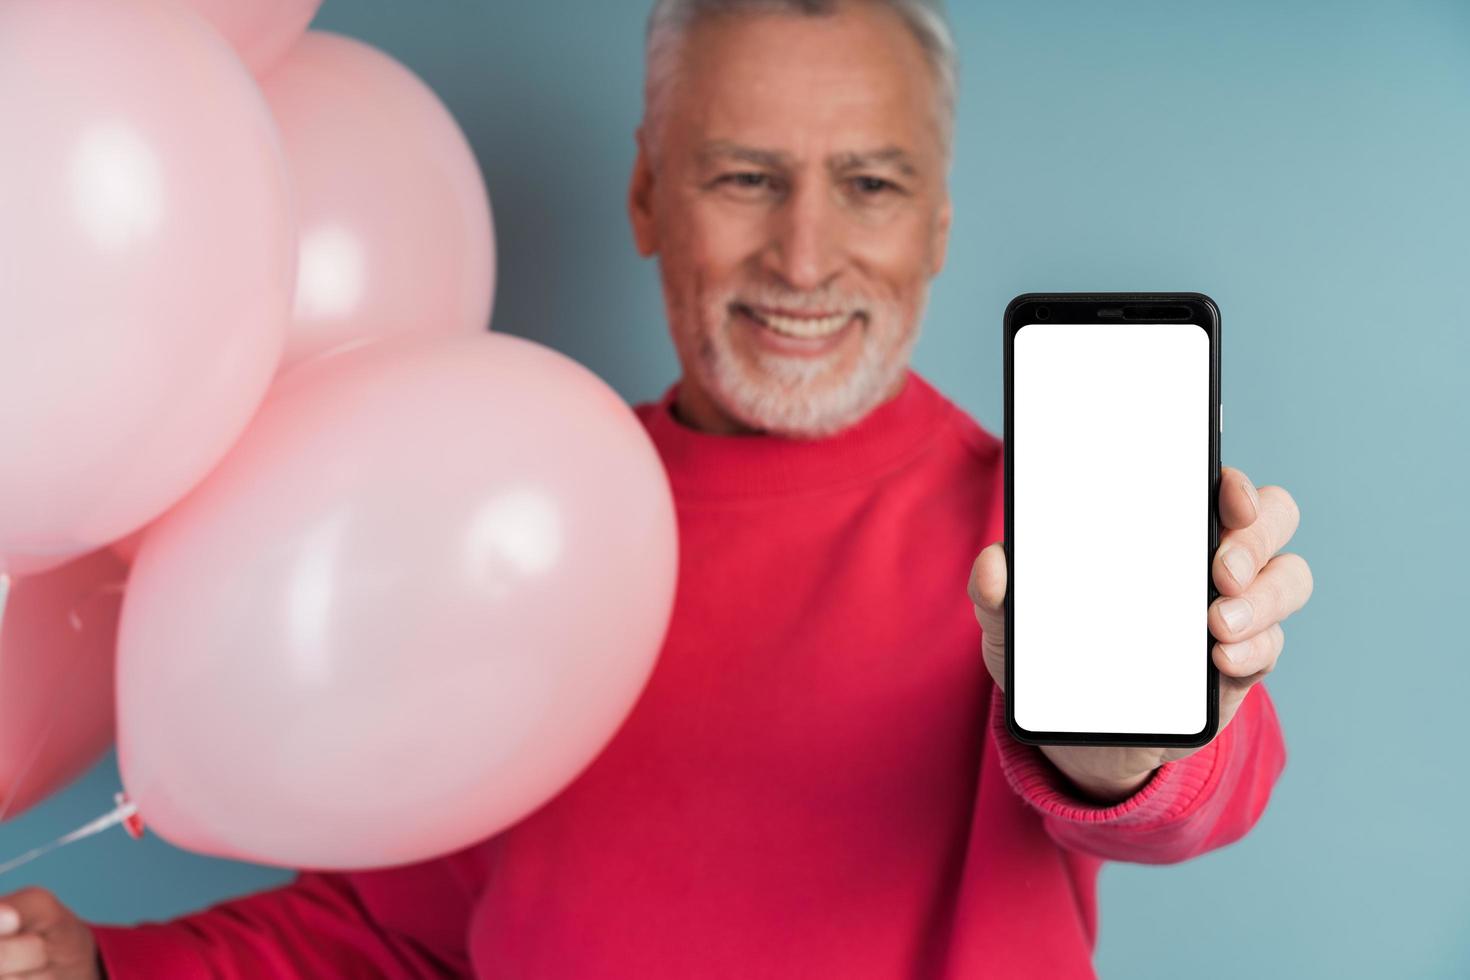 O avô fofo e sorridente segura um telefone e mostra uma tela em branco e escura foto